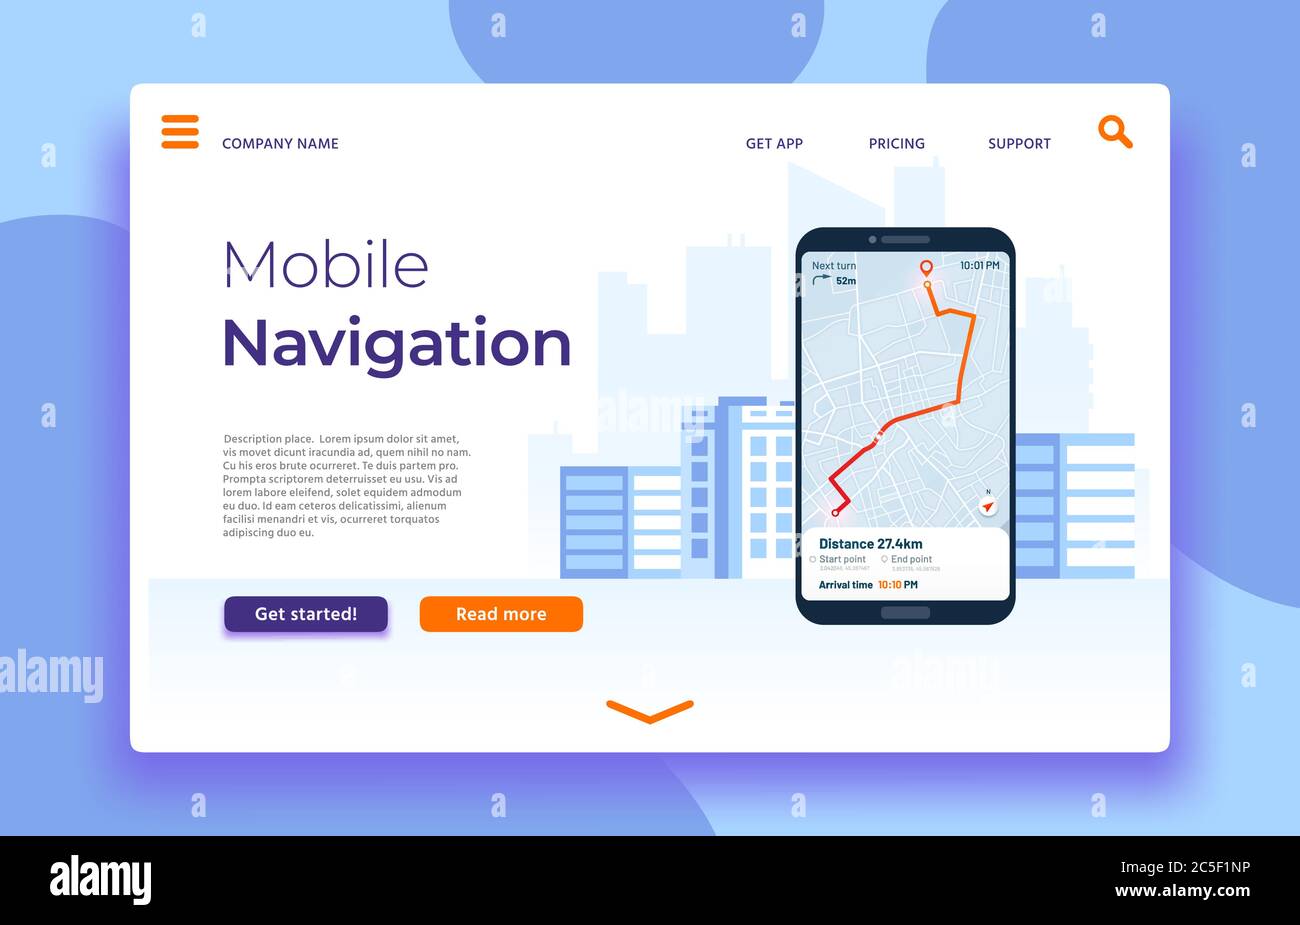 Landing Page für die mobile Navigation, Smartphone mit GPS-Anwendung auf dem Bildschirm. Route mit Positionsmarke zuordnen Stock Vektor